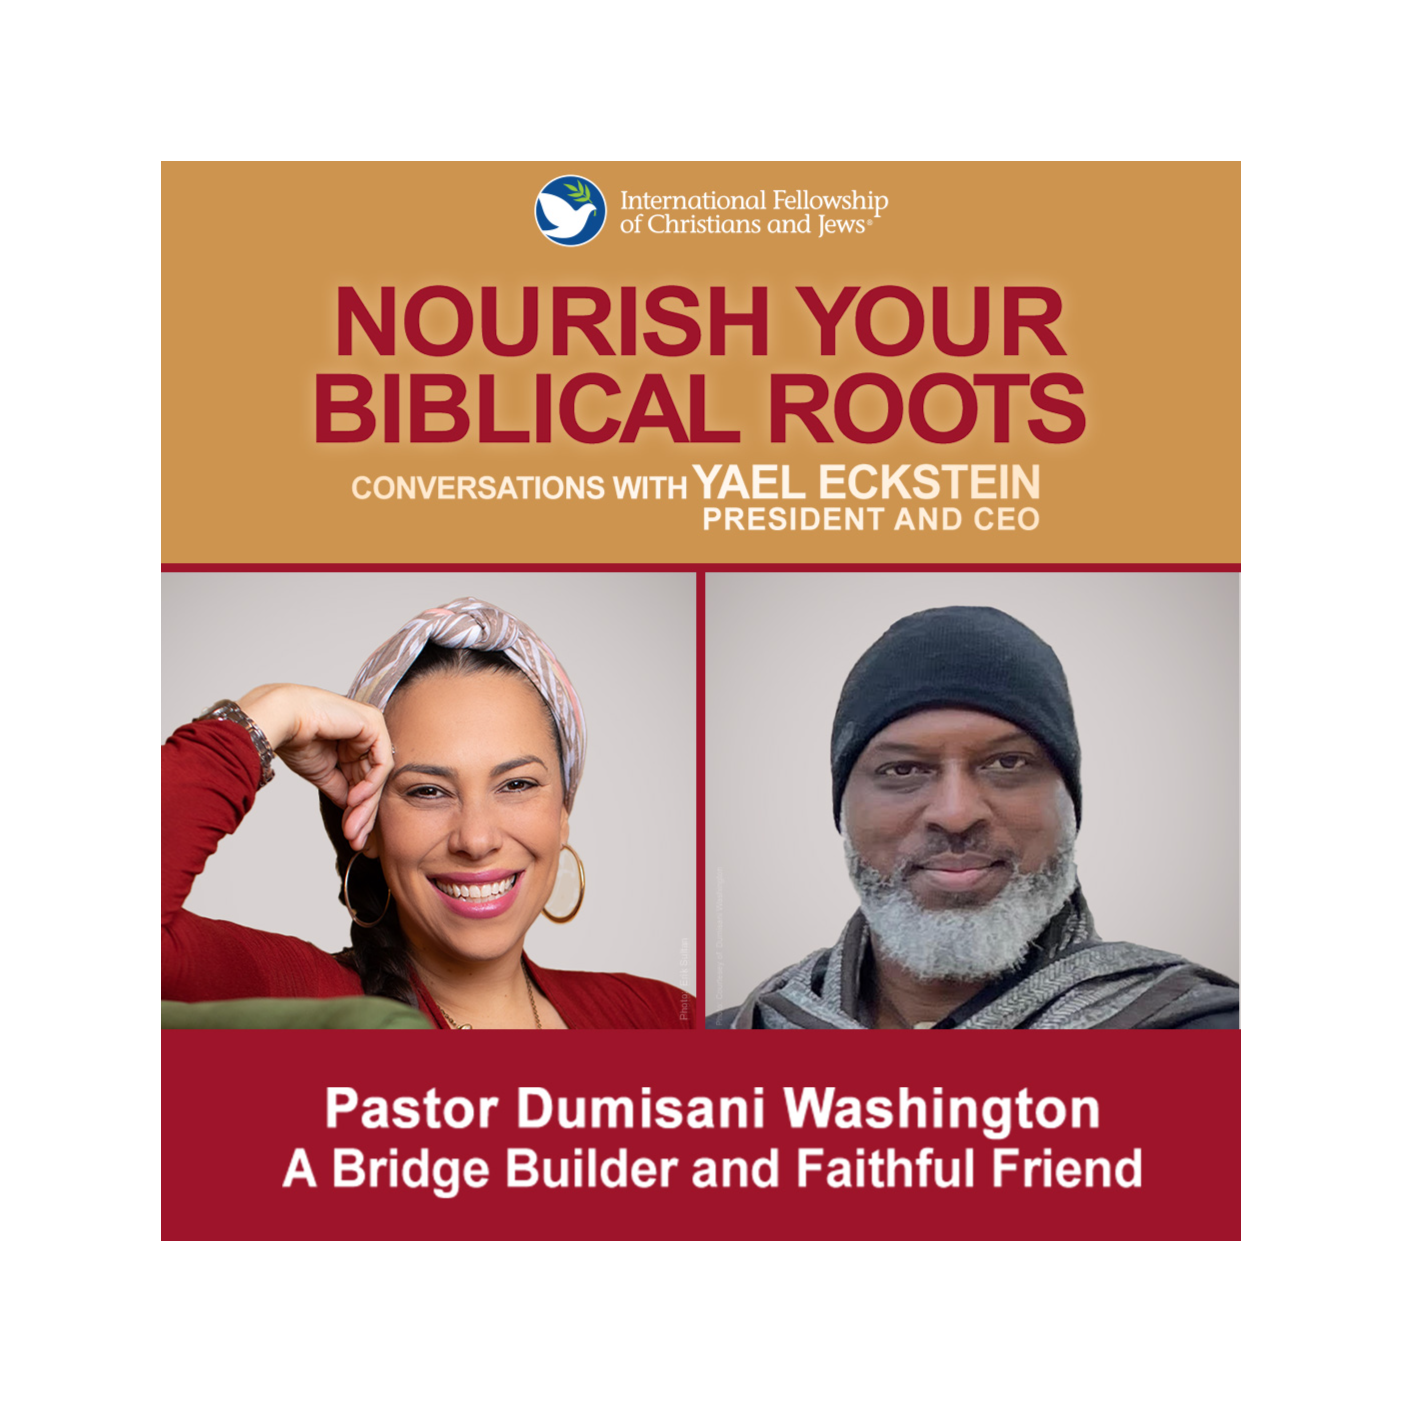 Pastor Dumisani Washington—A Bridge Builder and Faithful Friend